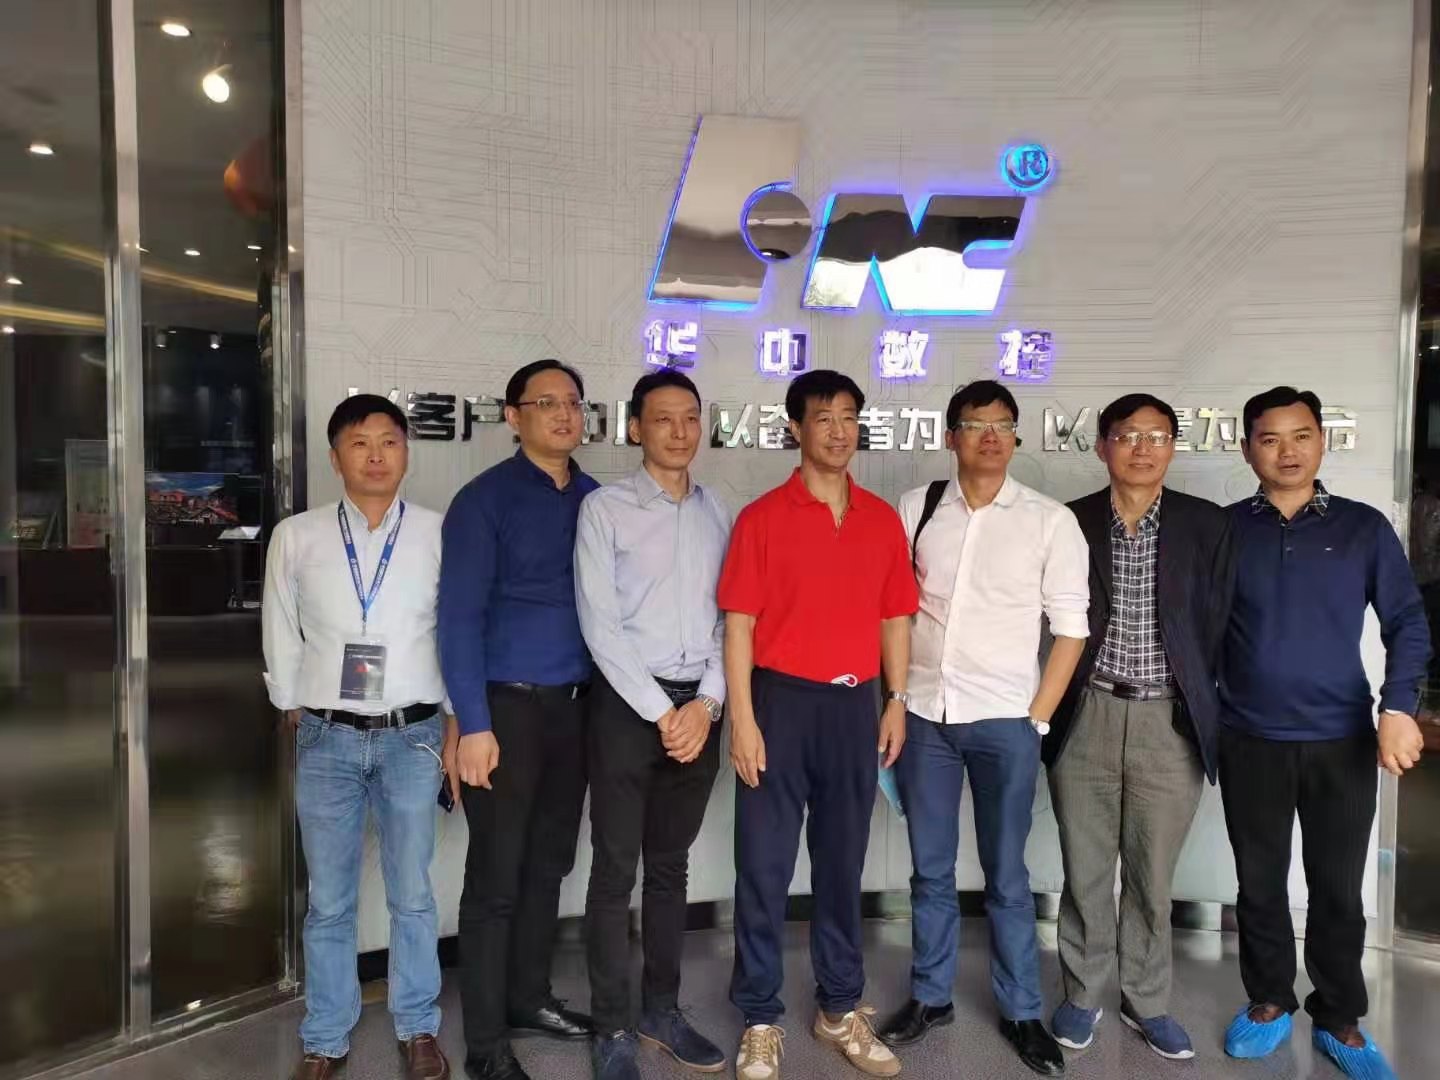 鼎奇主轴被评为中国机电装备现代企业制造服务标杆企业。